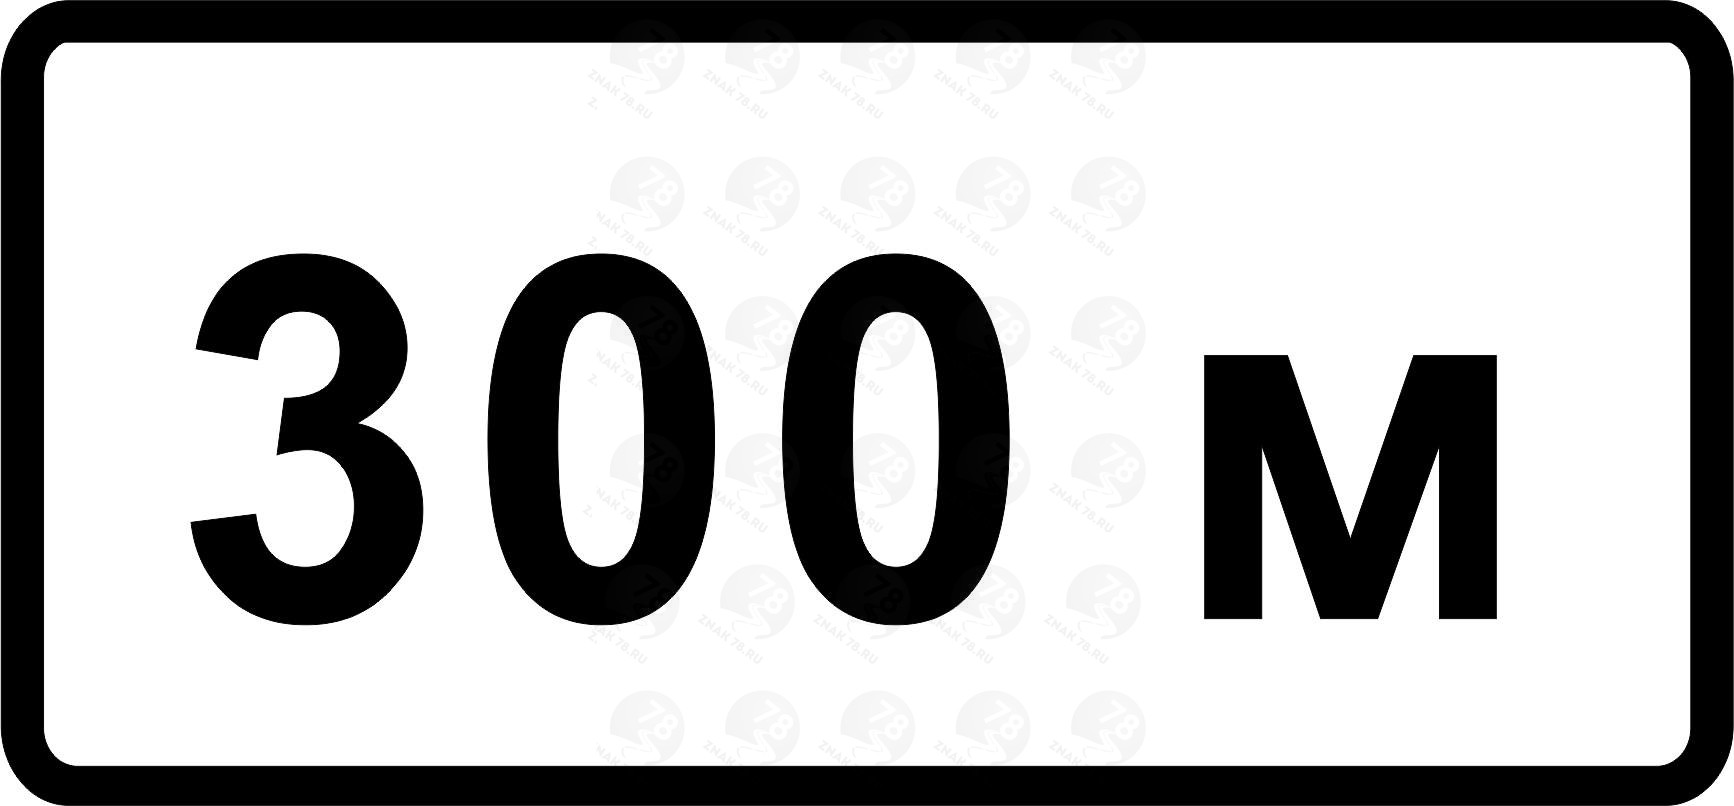 100 1.3. Дорожный знак 8.1.1 100 м. Дорожный знак 8.2.1 150 м. Знак 8.1.1 250 метров. Знак 8.2.1 100 м.